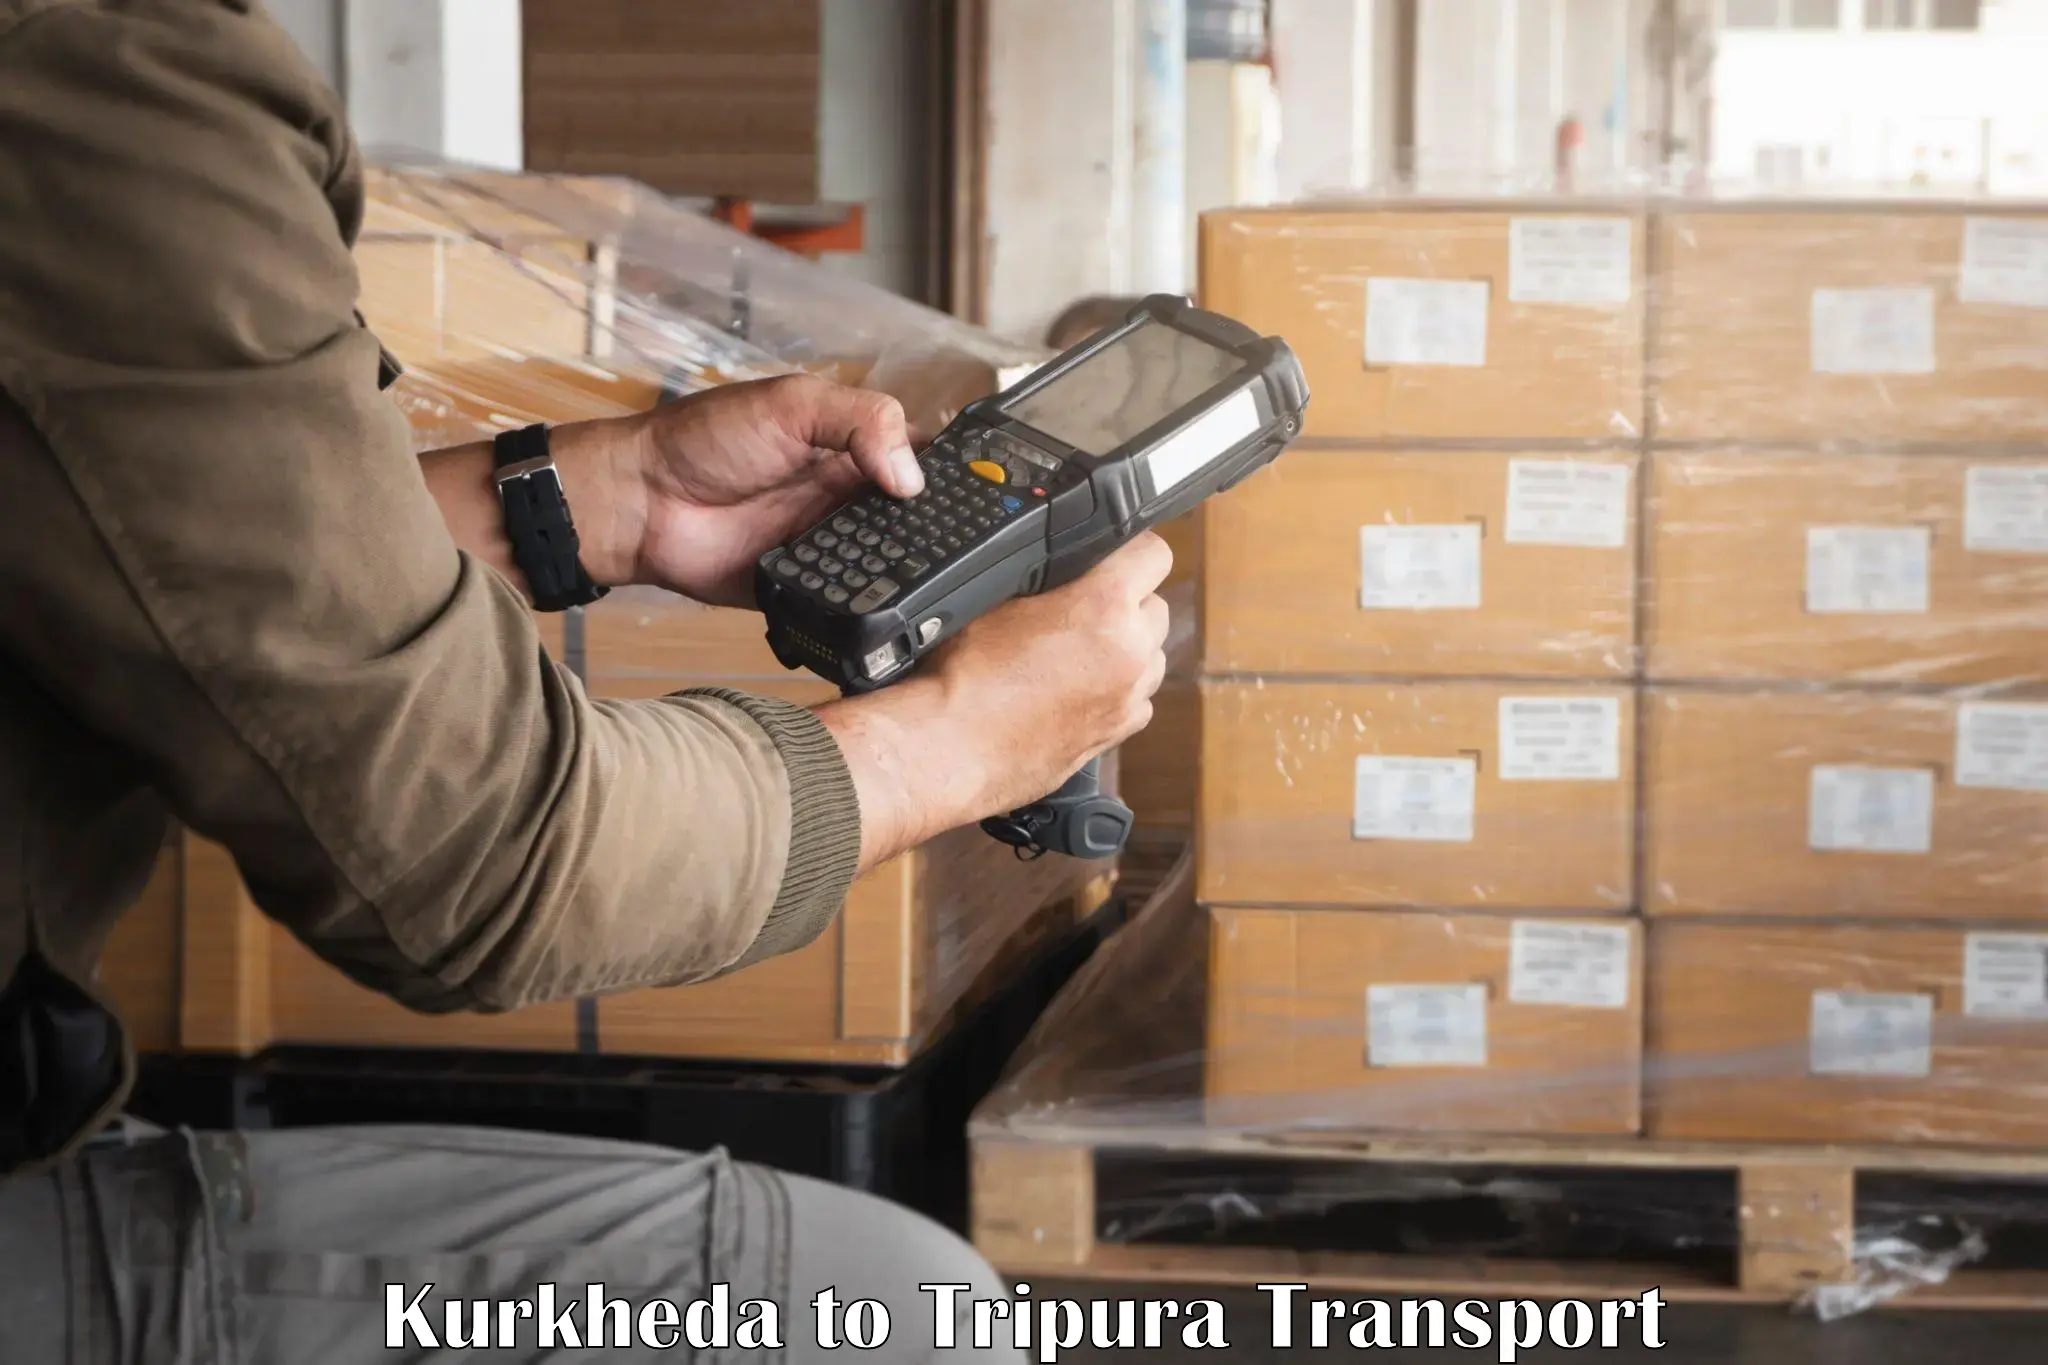 Vehicle transport services Kurkheda to Udaipur Tripura